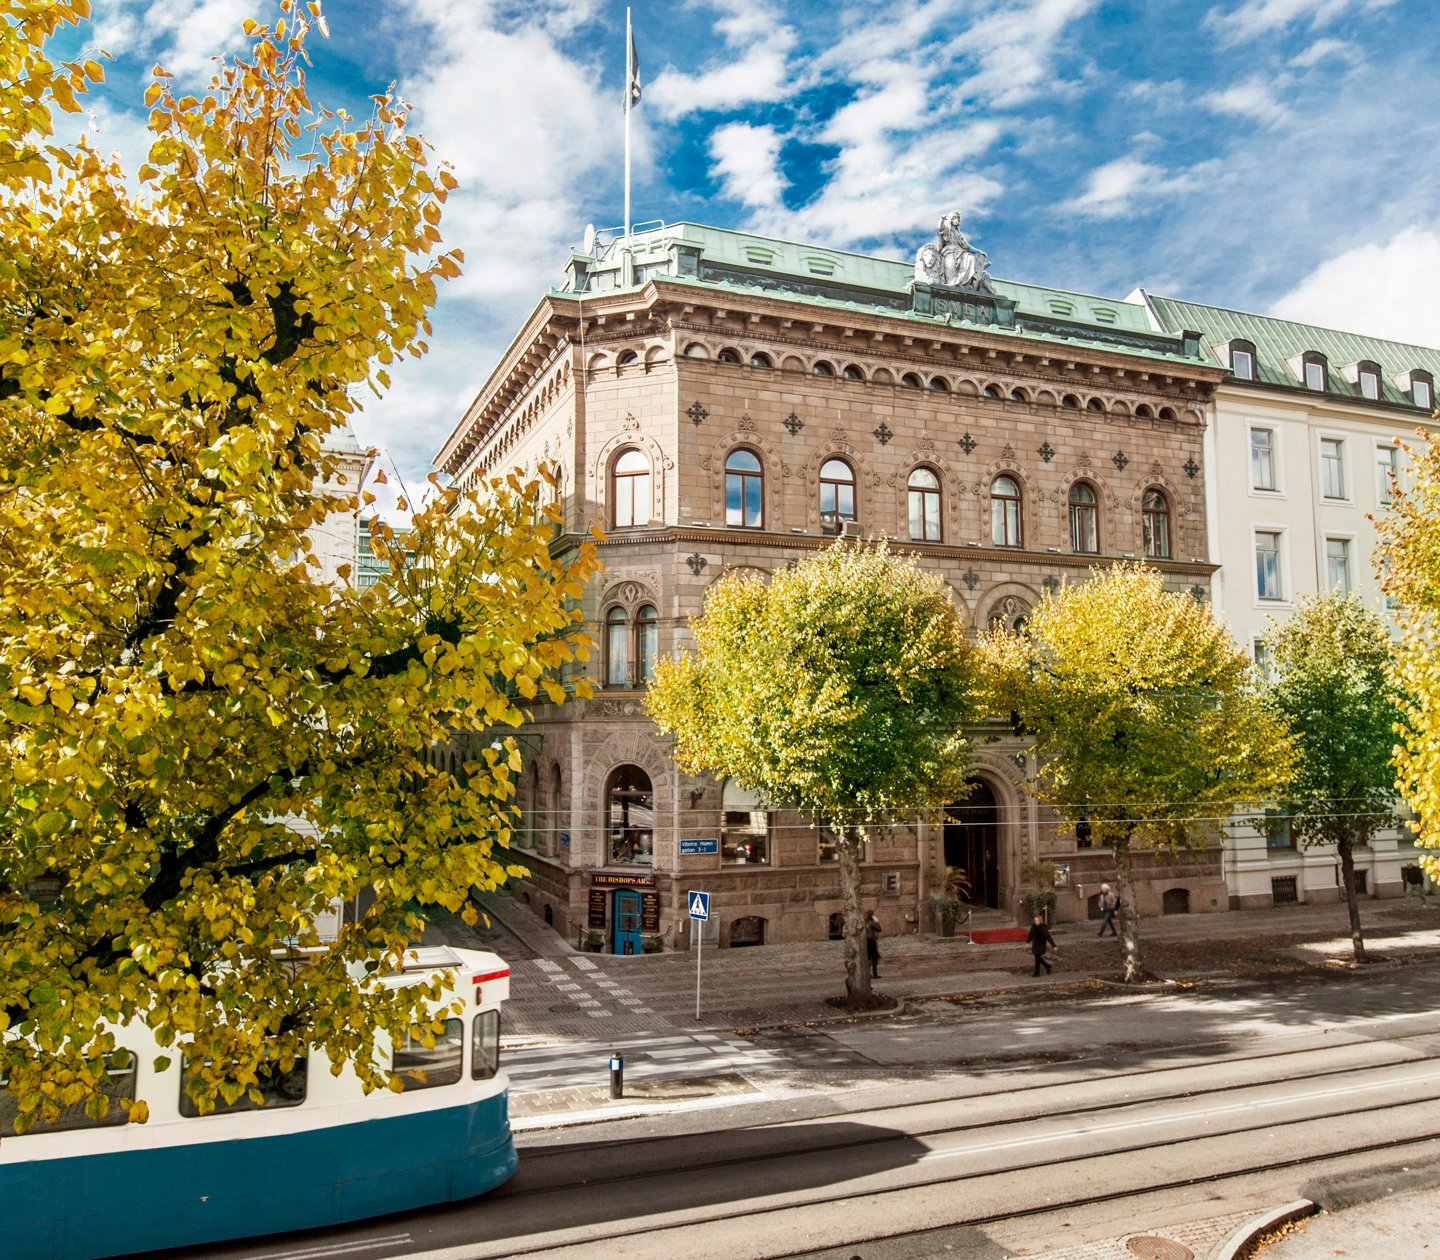 Fina fasaden av Elite Plaza Hotel i Göteborg med träd och spårvagn framför